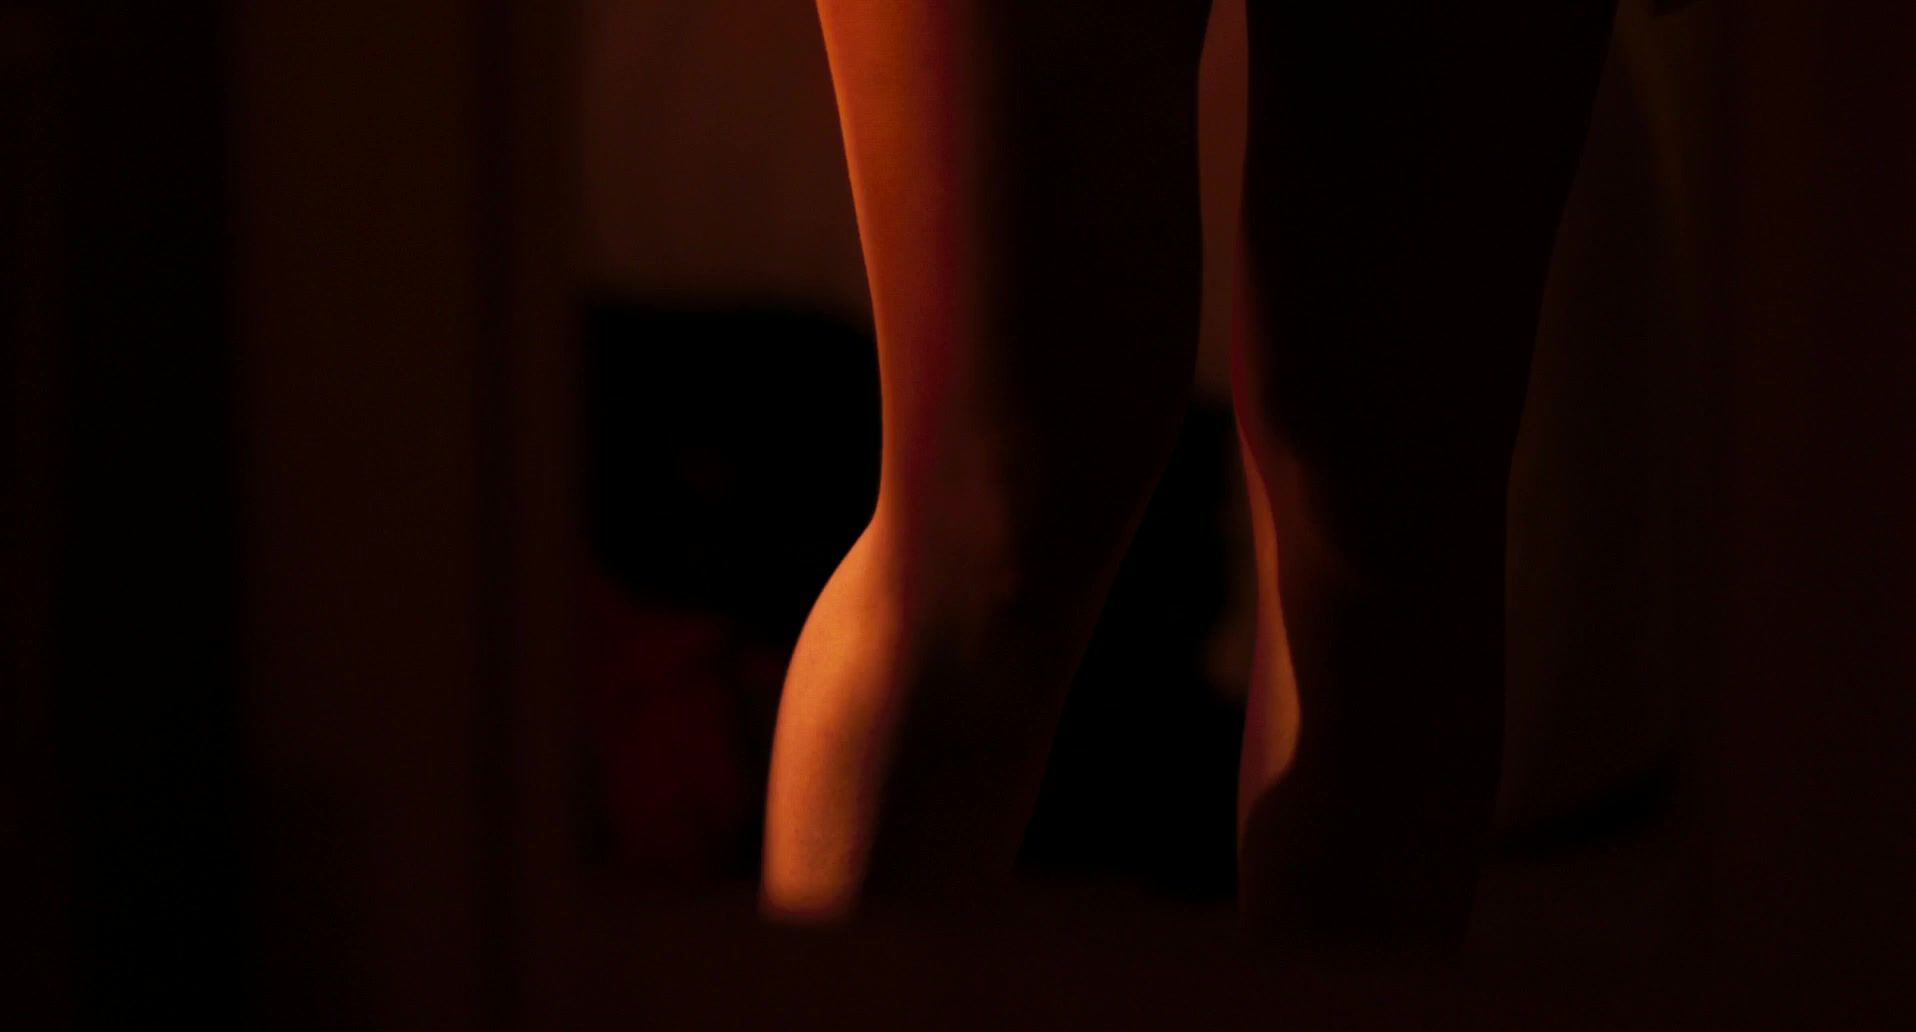 Full Movie Scarlett Johansson - UNDER THE SKIN (2014) Hot Brunette